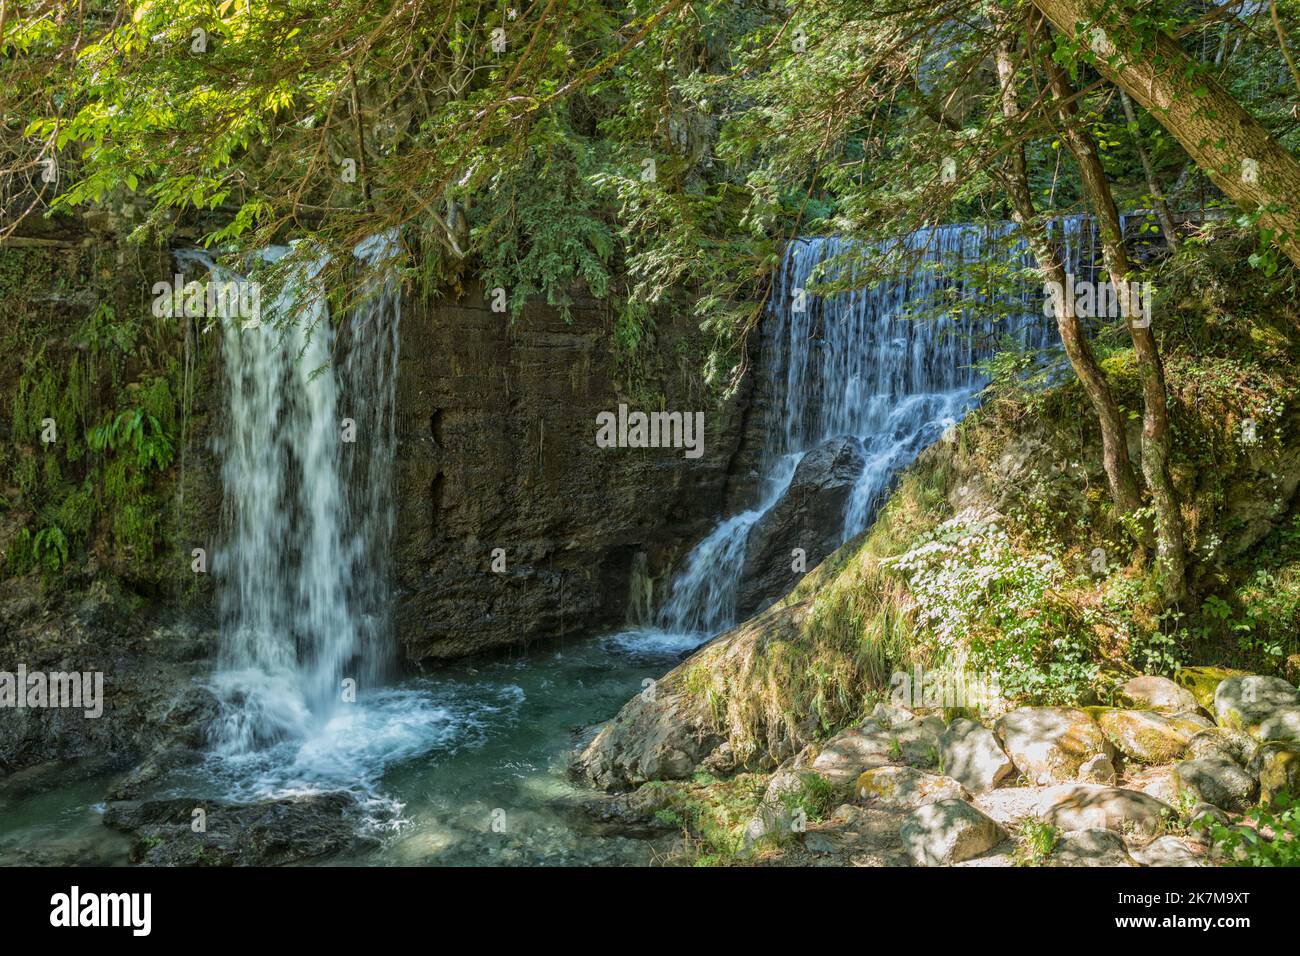 Cascata di Tobi waterfalls at Grandola ed Uniti above Menaggio on Lake Como, Italy Stock Photo